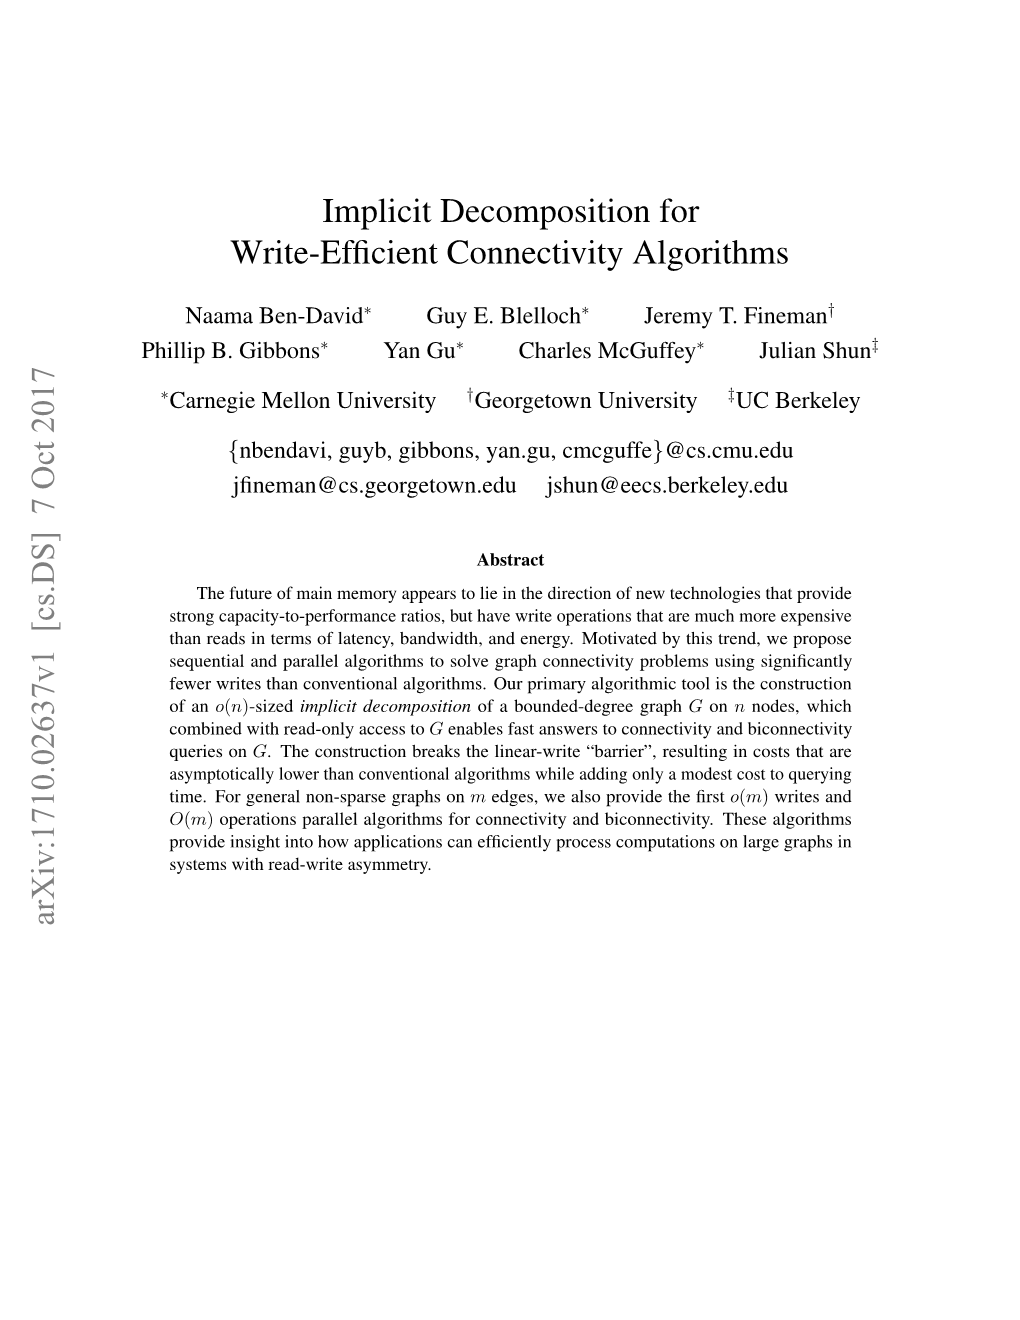 Implicit Decomposition for Write-Efficient Connectivity Algorithms Arxiv:1710.02637V1 [Cs.DS] 7 Oct 2017